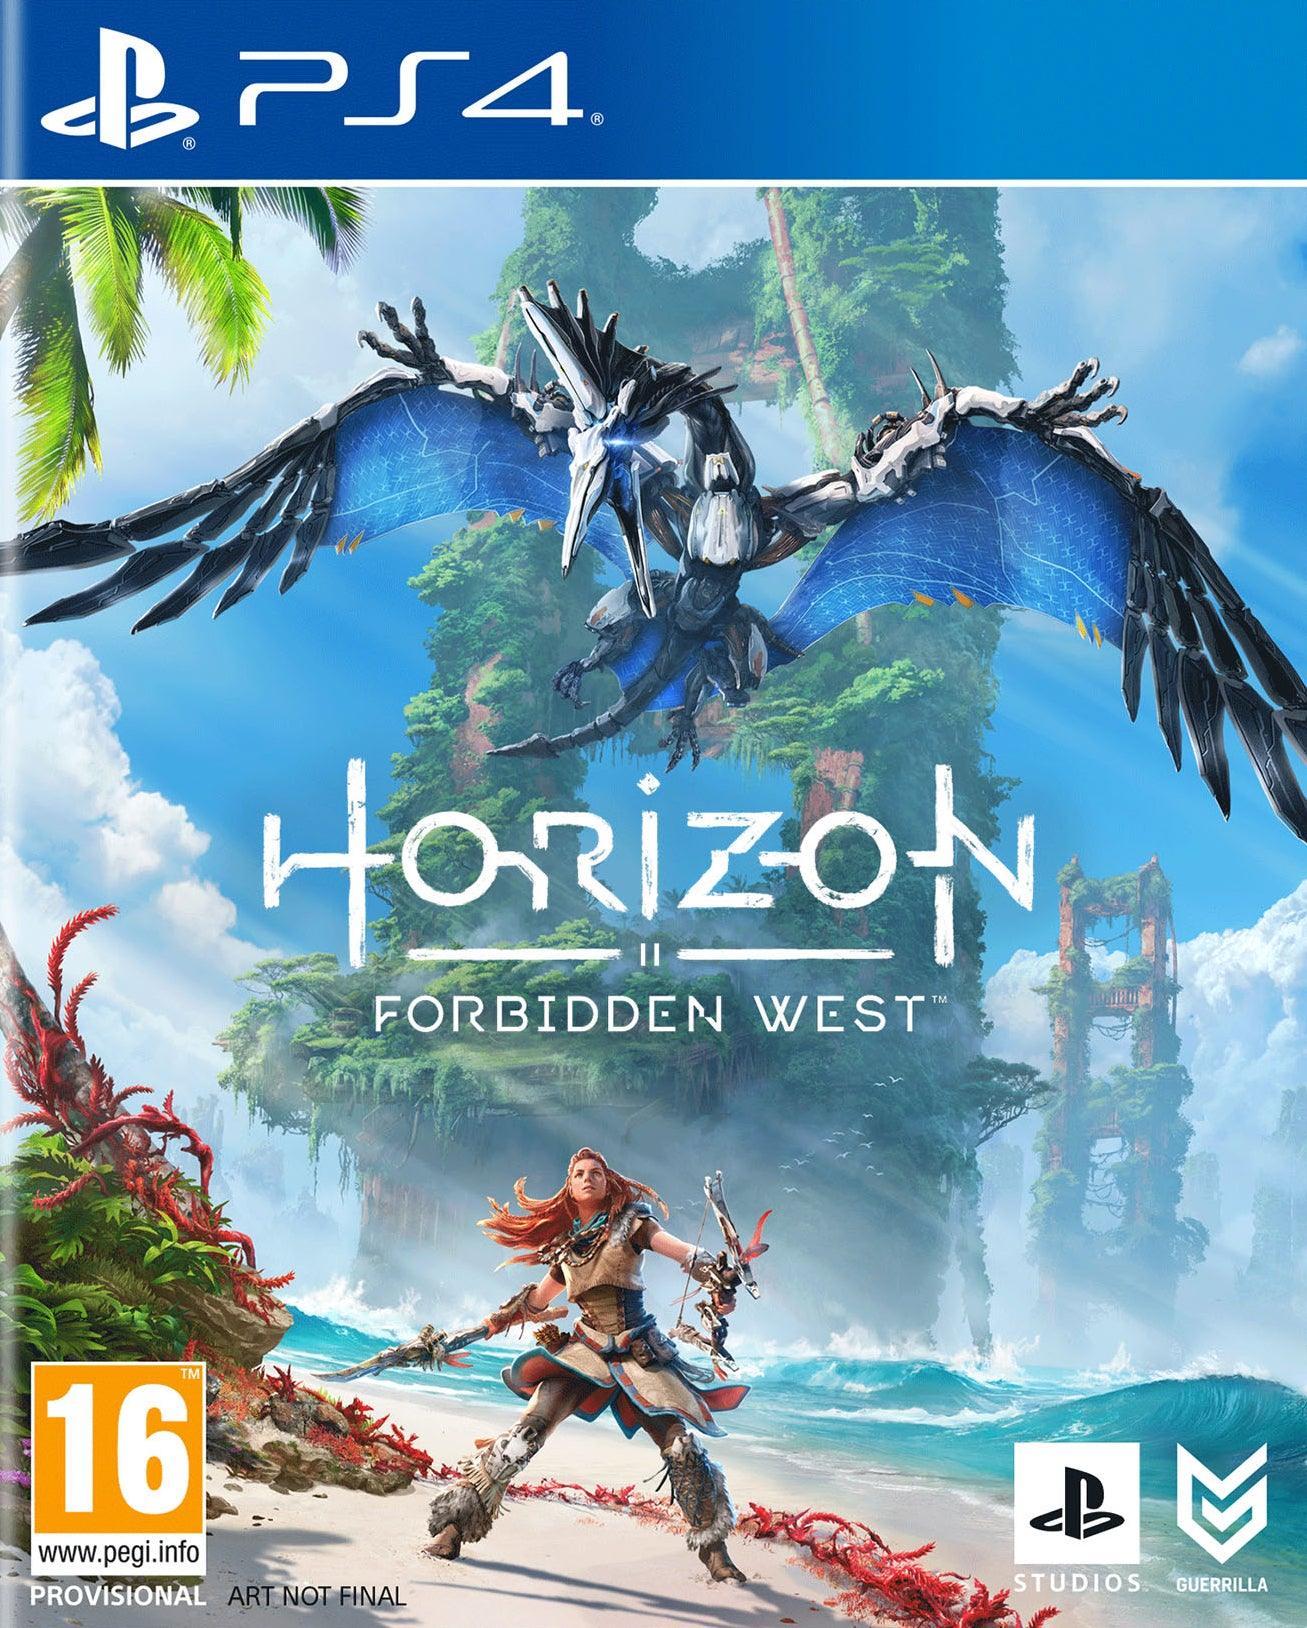 Horizon Forbidden West - Want a New Gadget